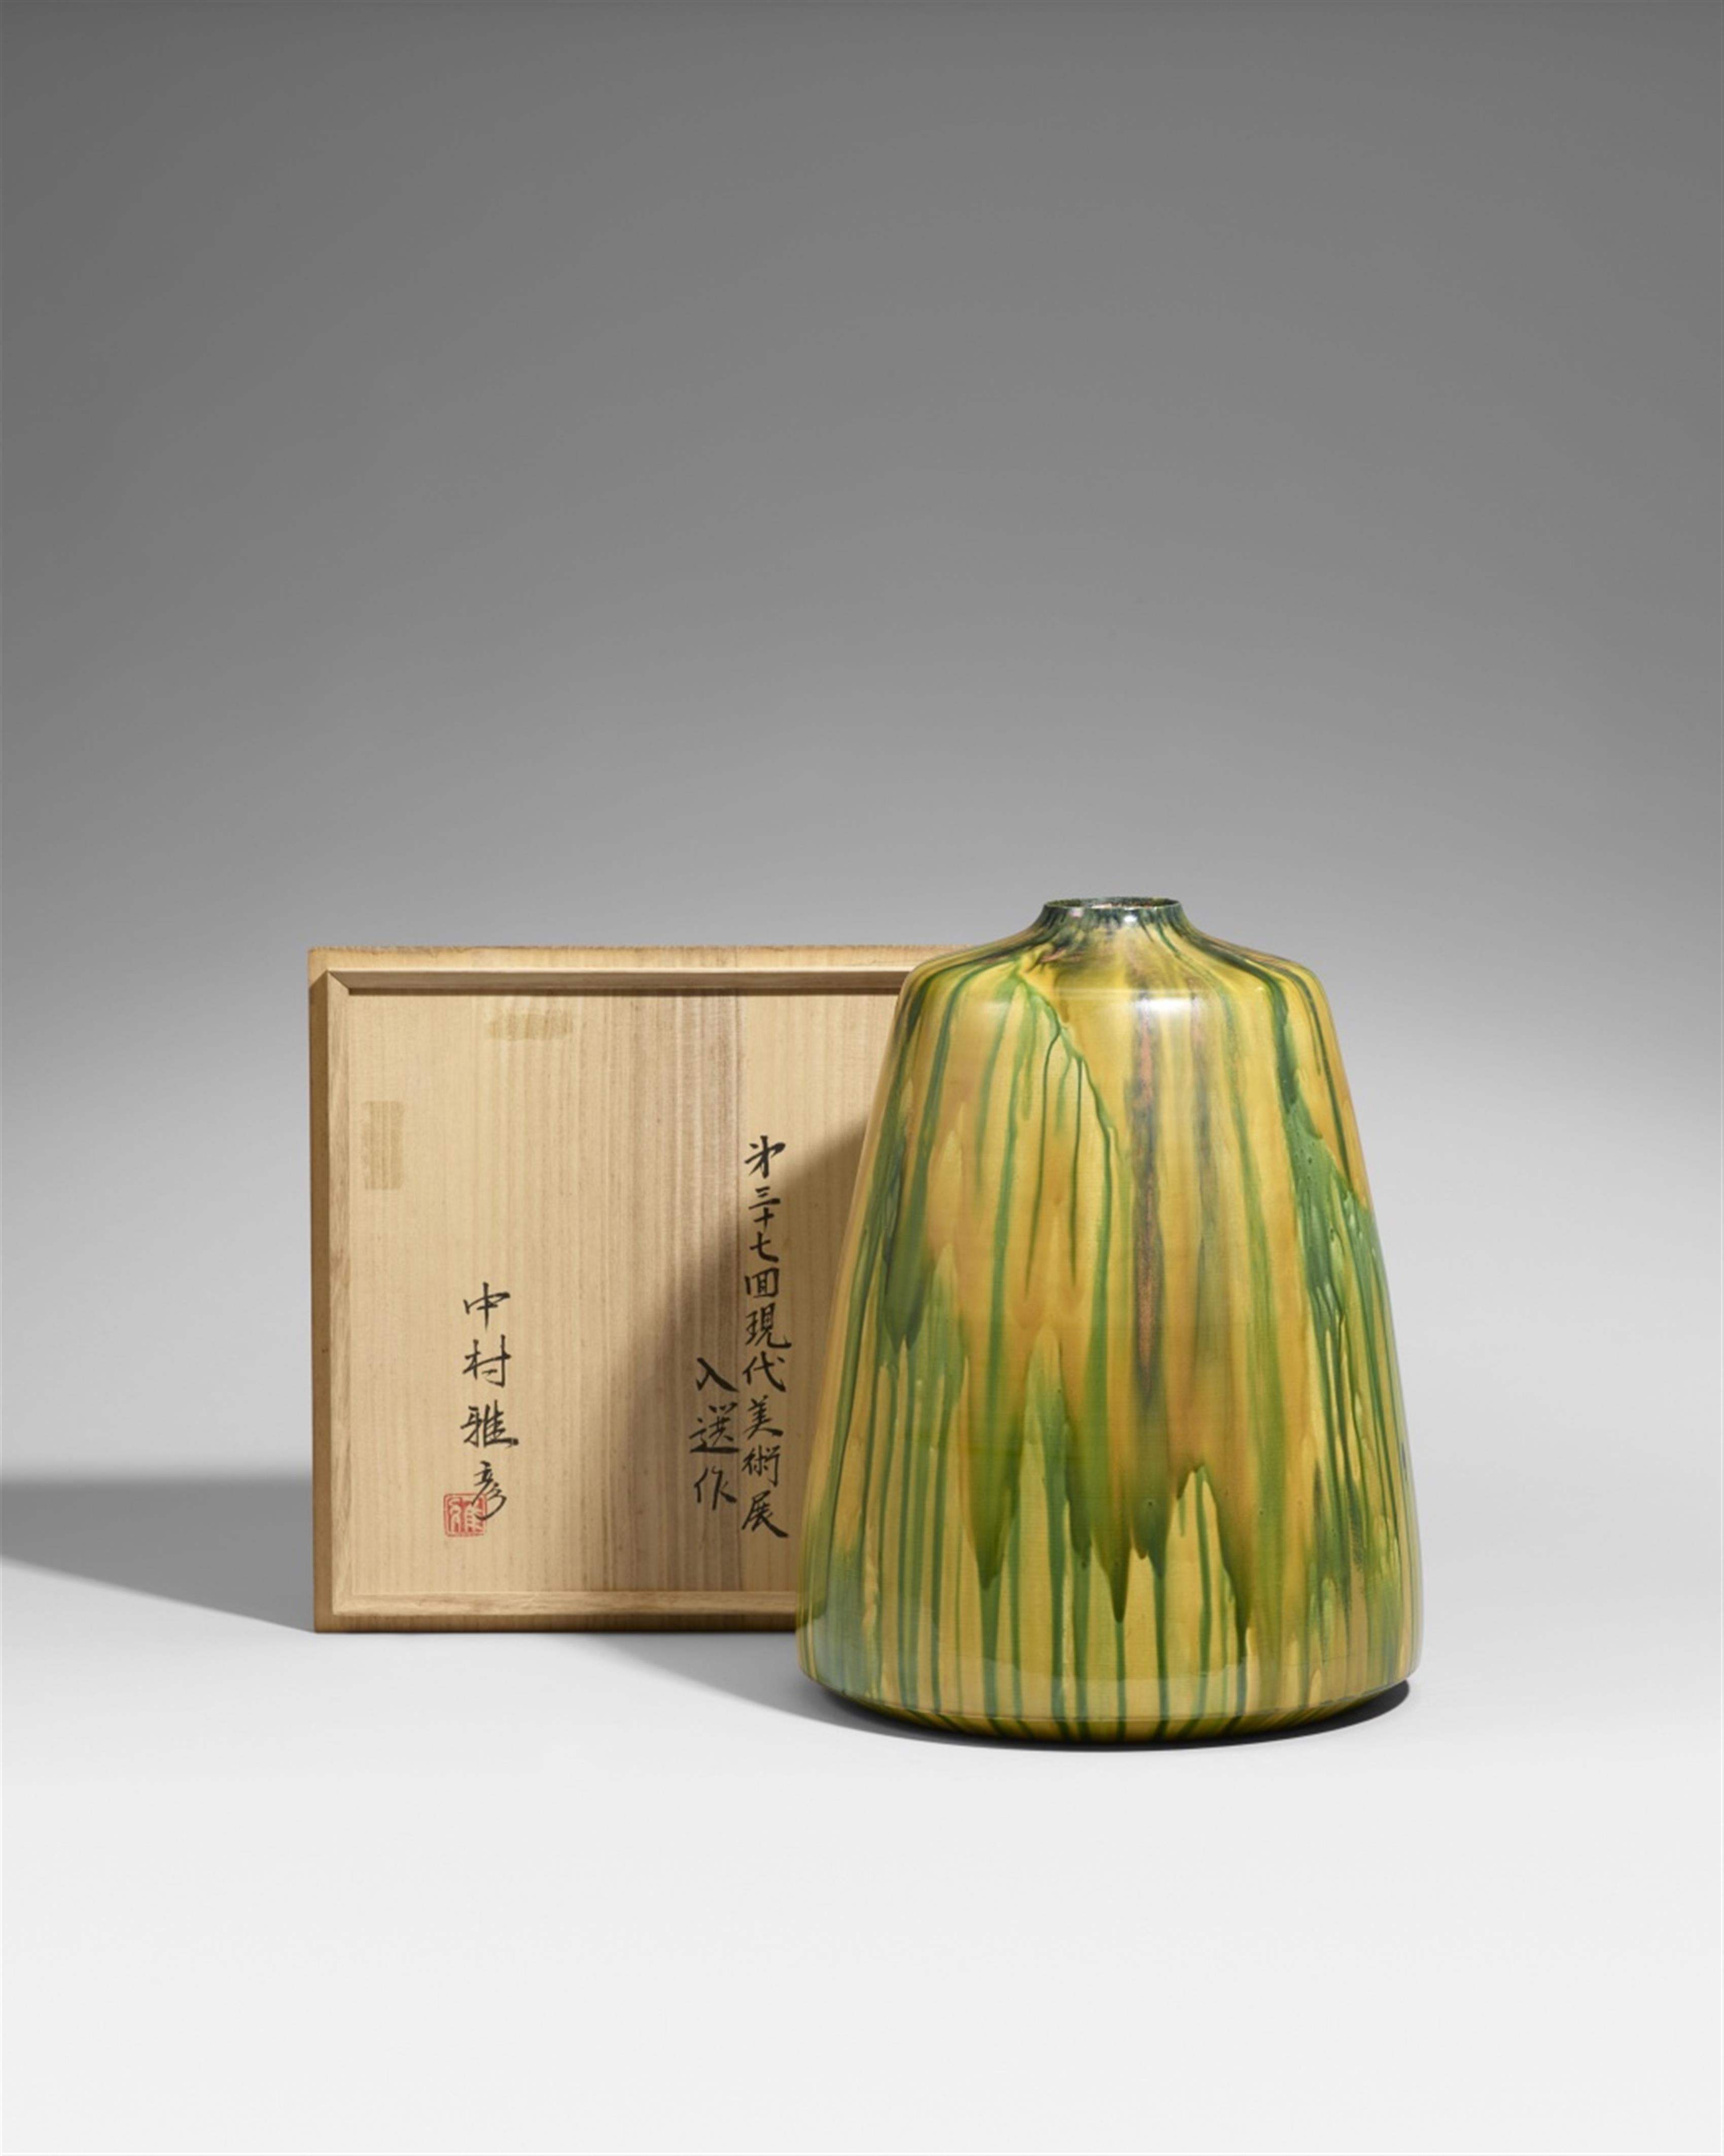 A very large Kutani-yaki vase by Nakamura Kunihiko Shuto V. Around 2002 - image-1